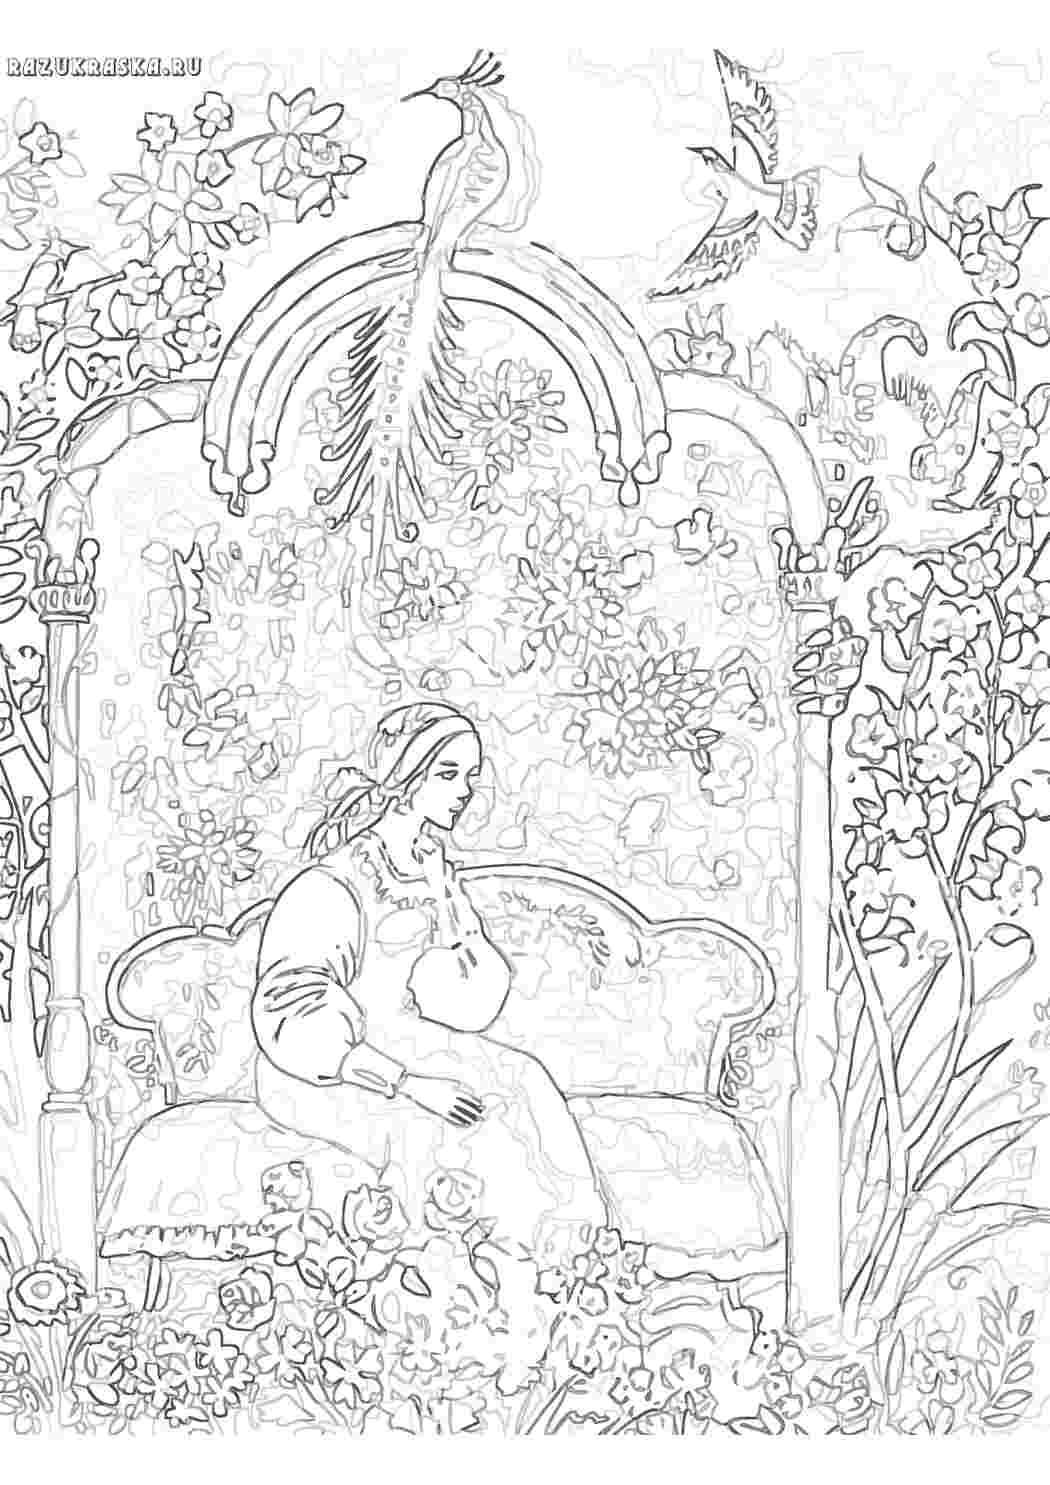 Иллюстрация к сказке Аленький цветочек раскраска